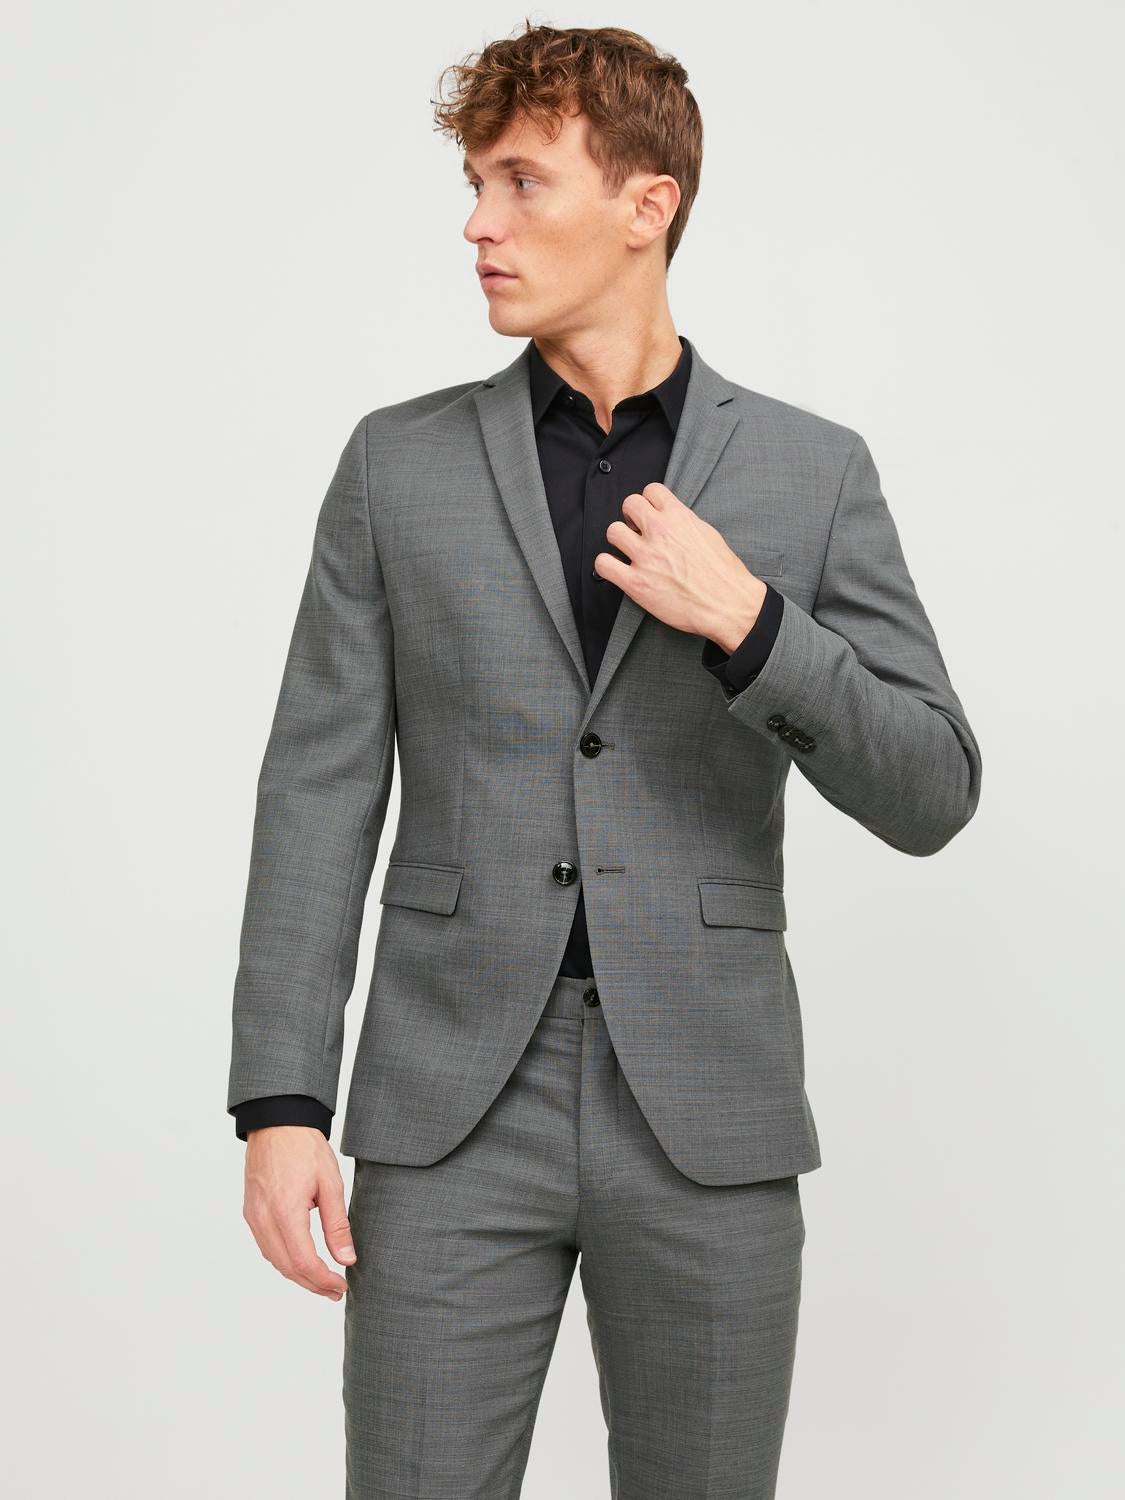 Red Single discount 62% Jack & Jones Tie/accessory MEN FASHION Suits & Sets Print 